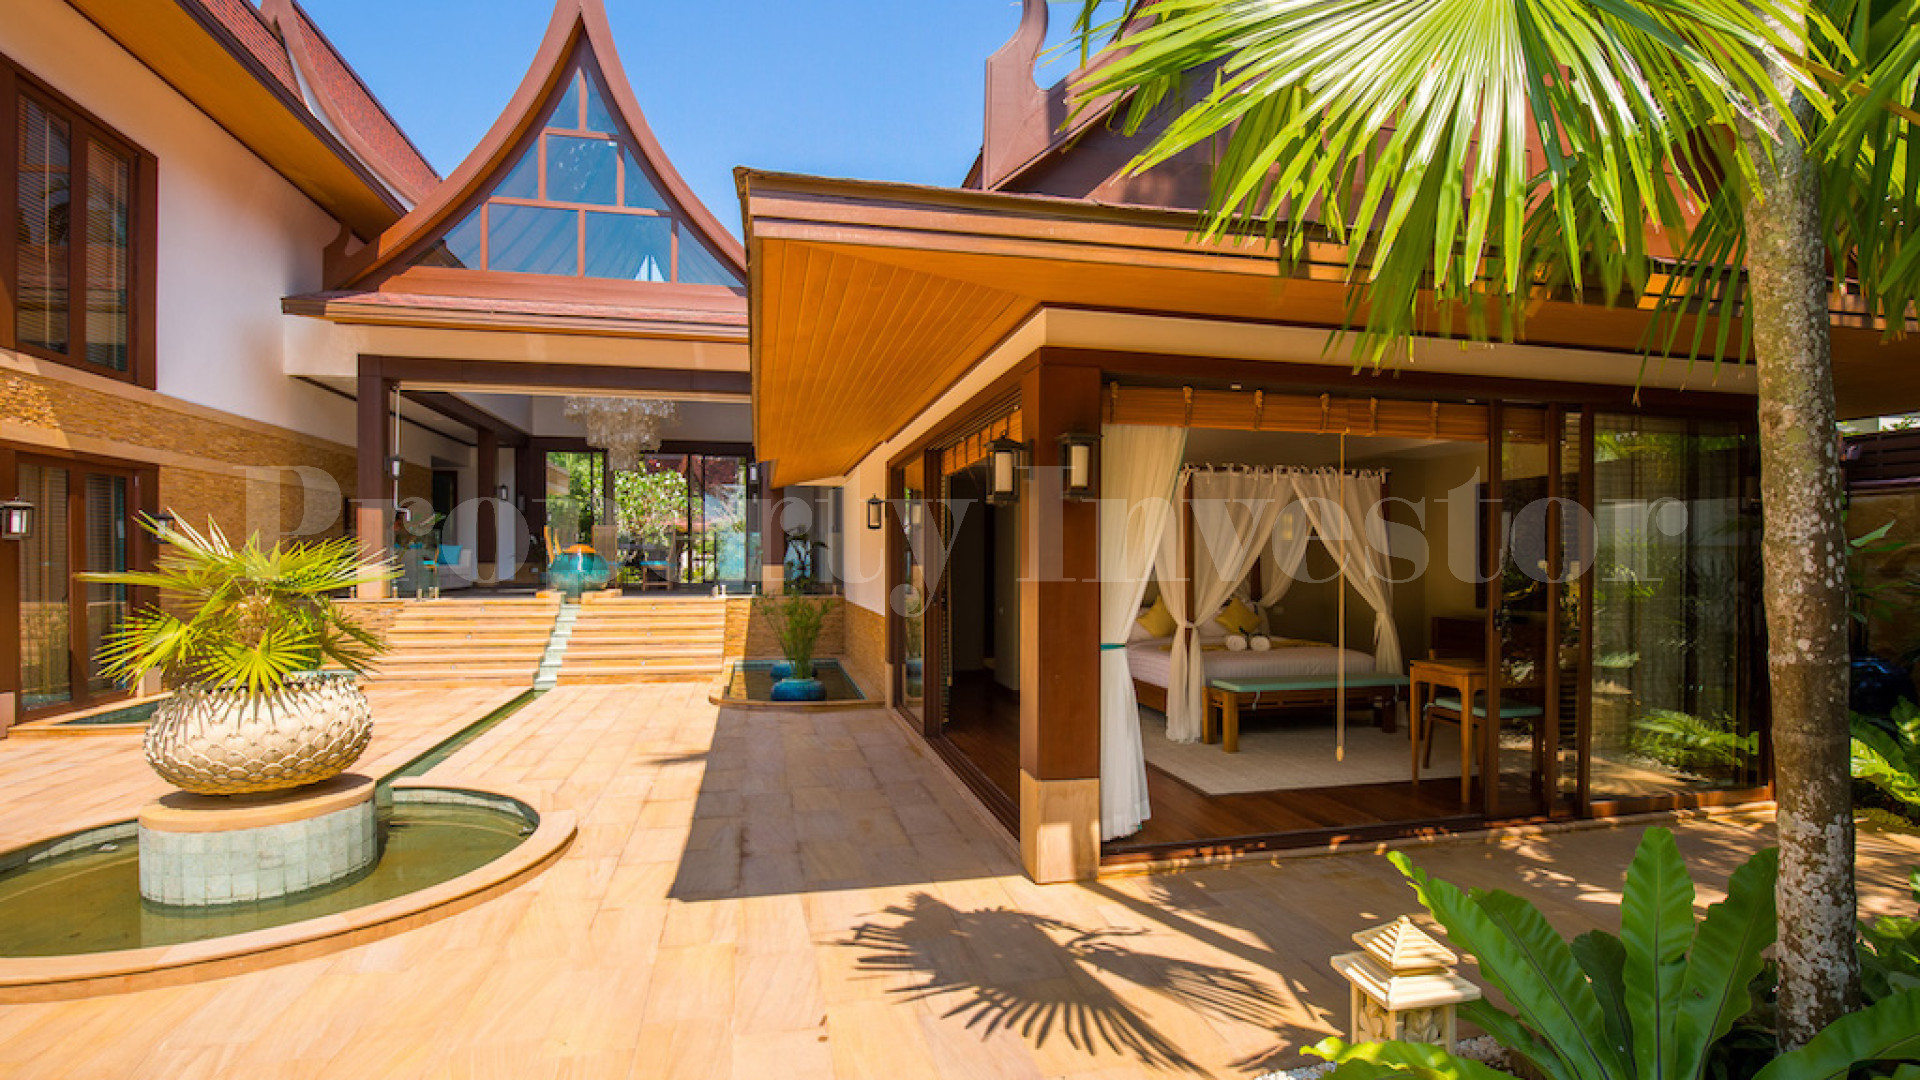 Продается роскошная тропическая вилла с 5 спальнями в тайском стиле на Самуи